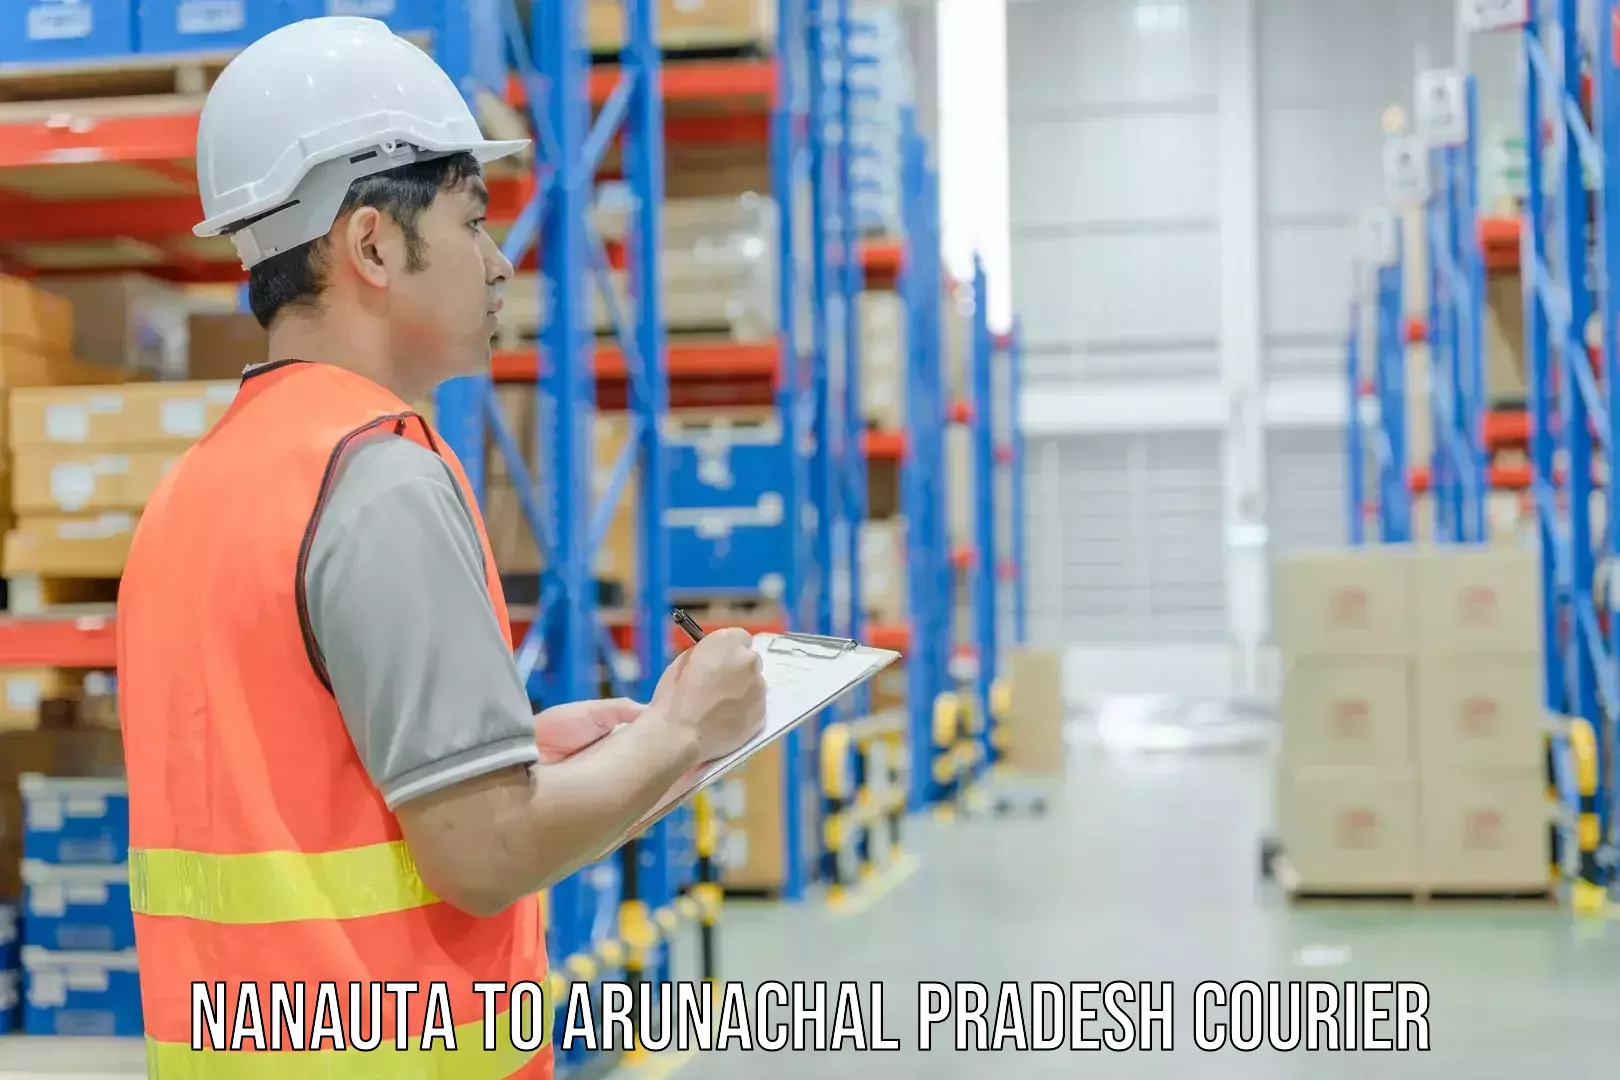 Cargo courier service Nanauta to Itanagar